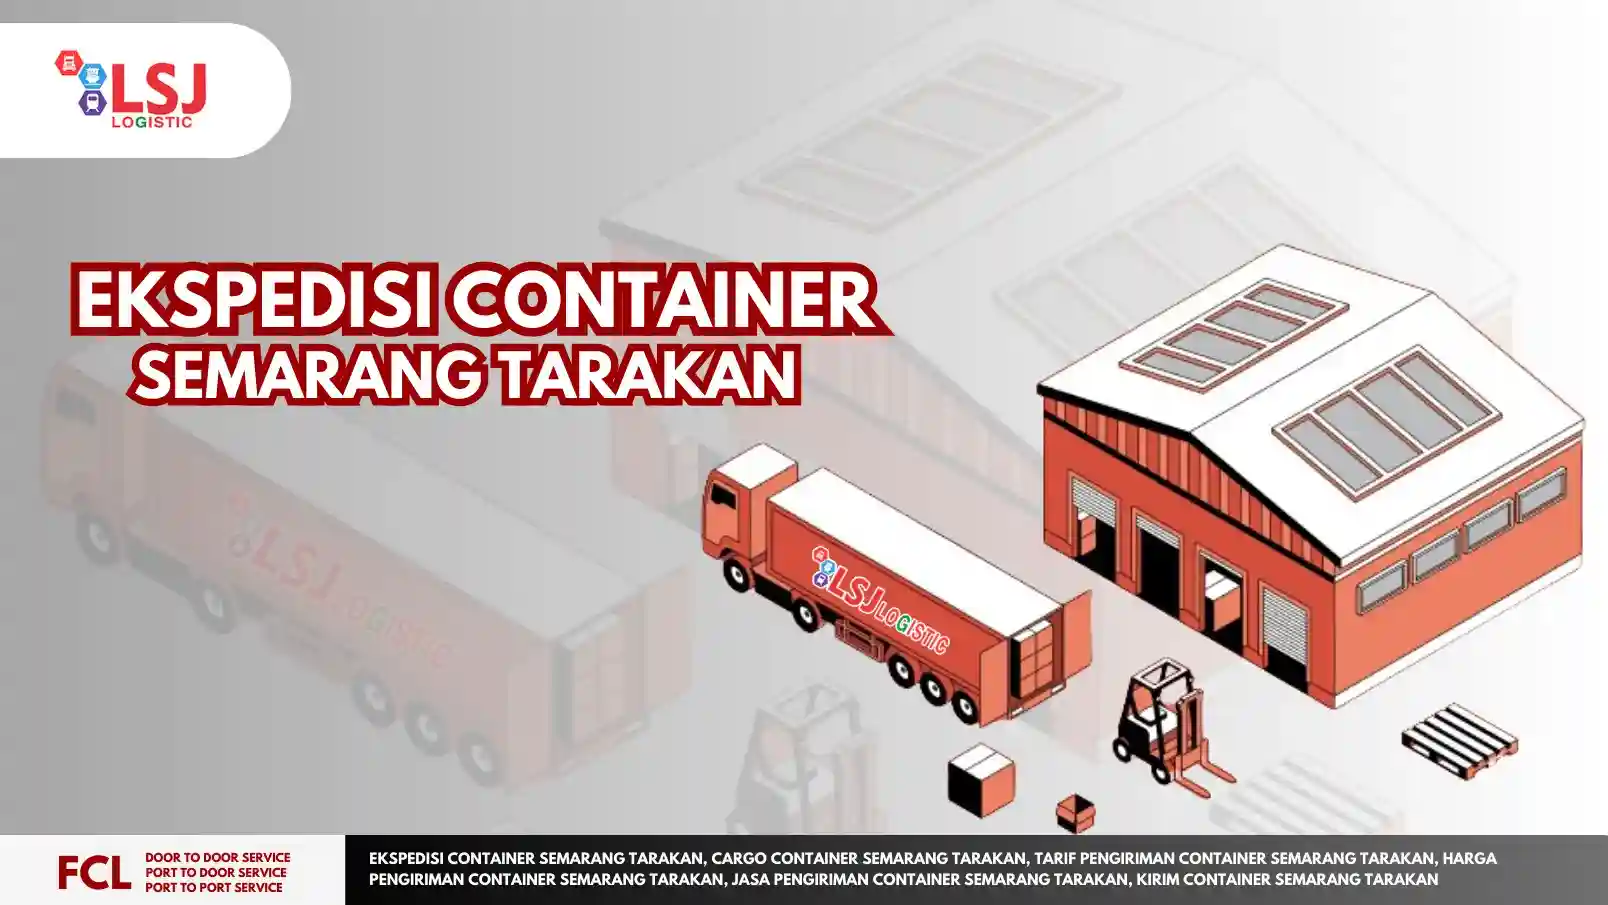 Ekspedisi Container Semarang Tarakan